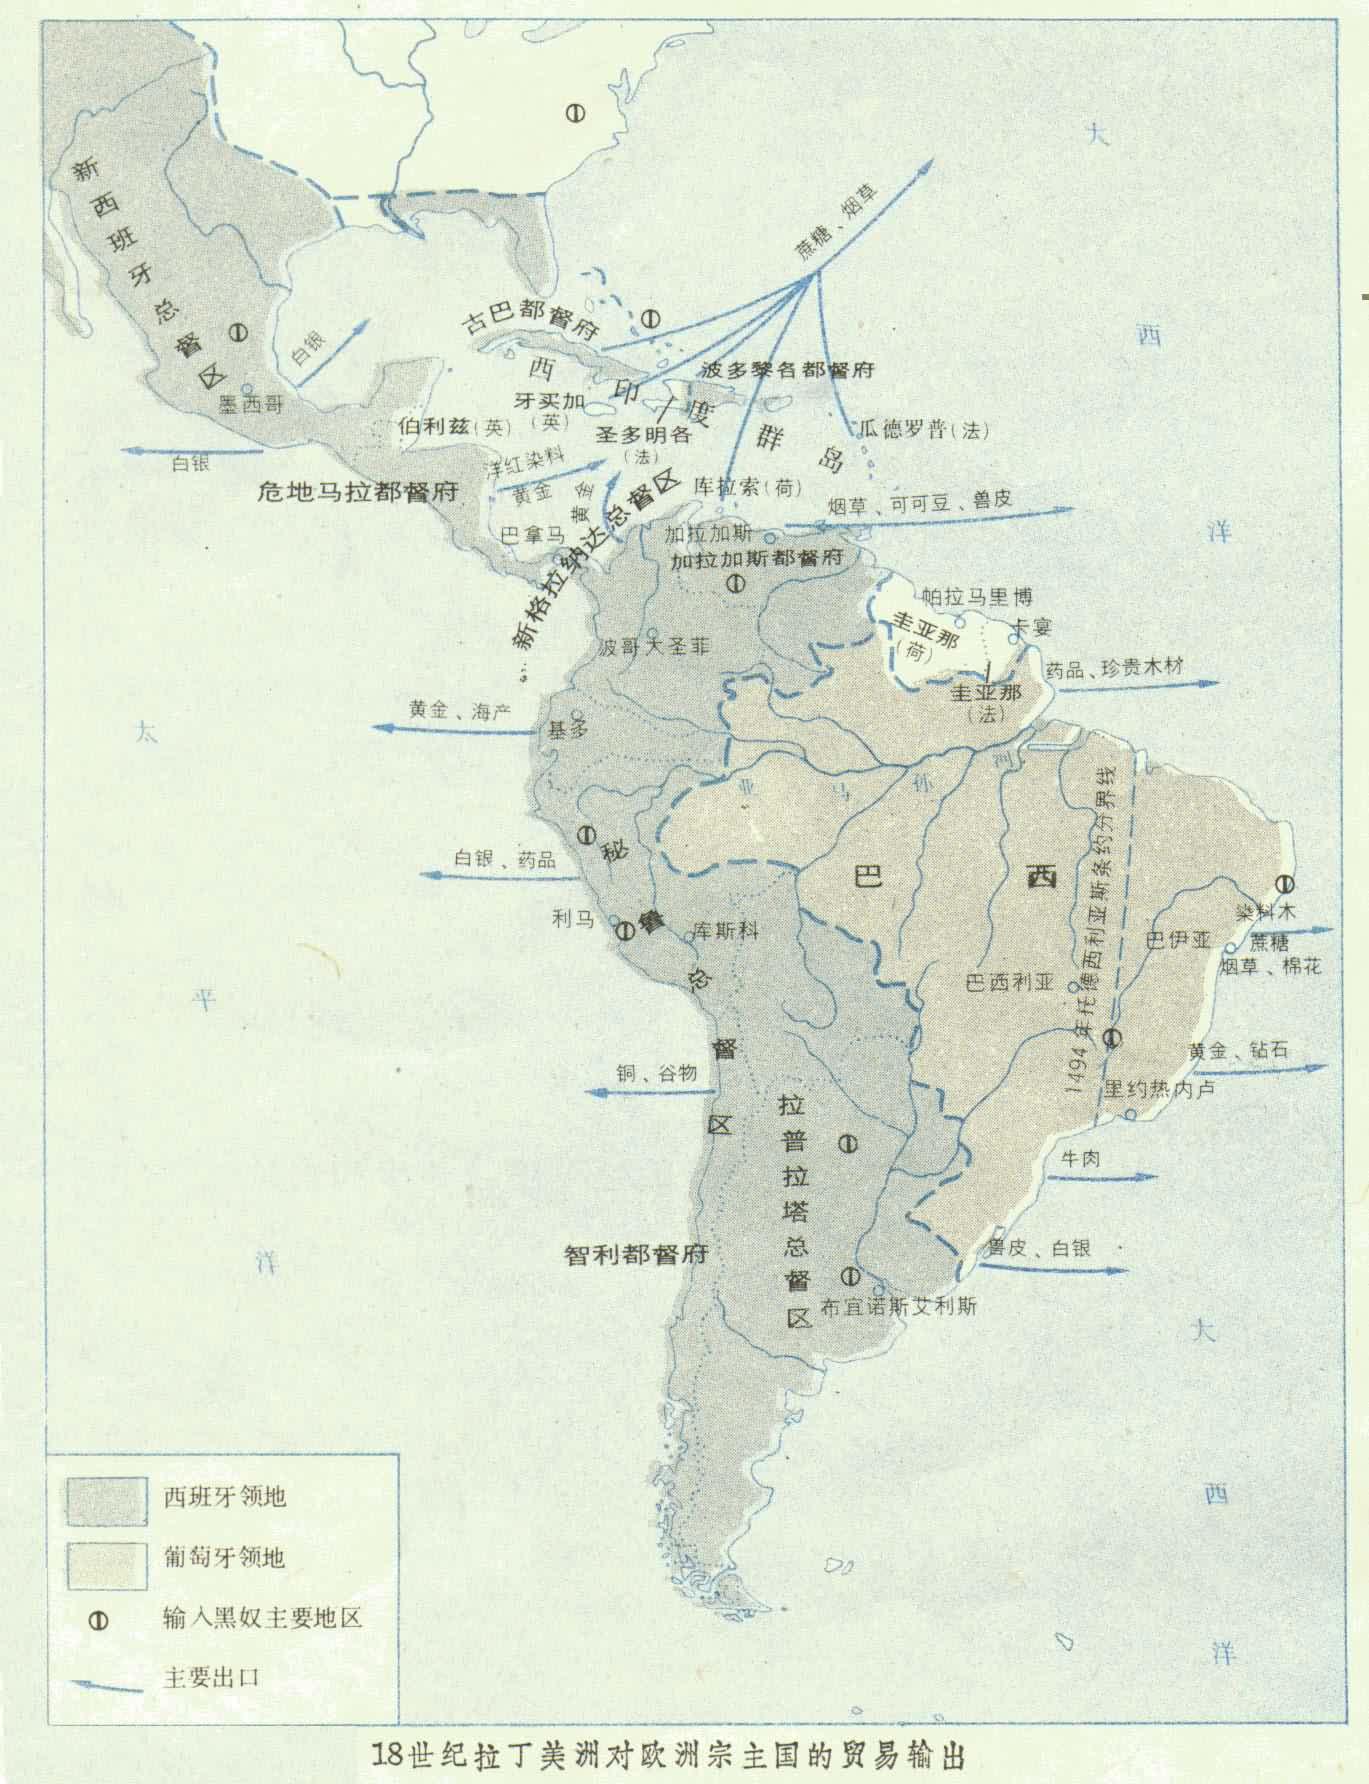 17世纪美洲殖民地地图图片